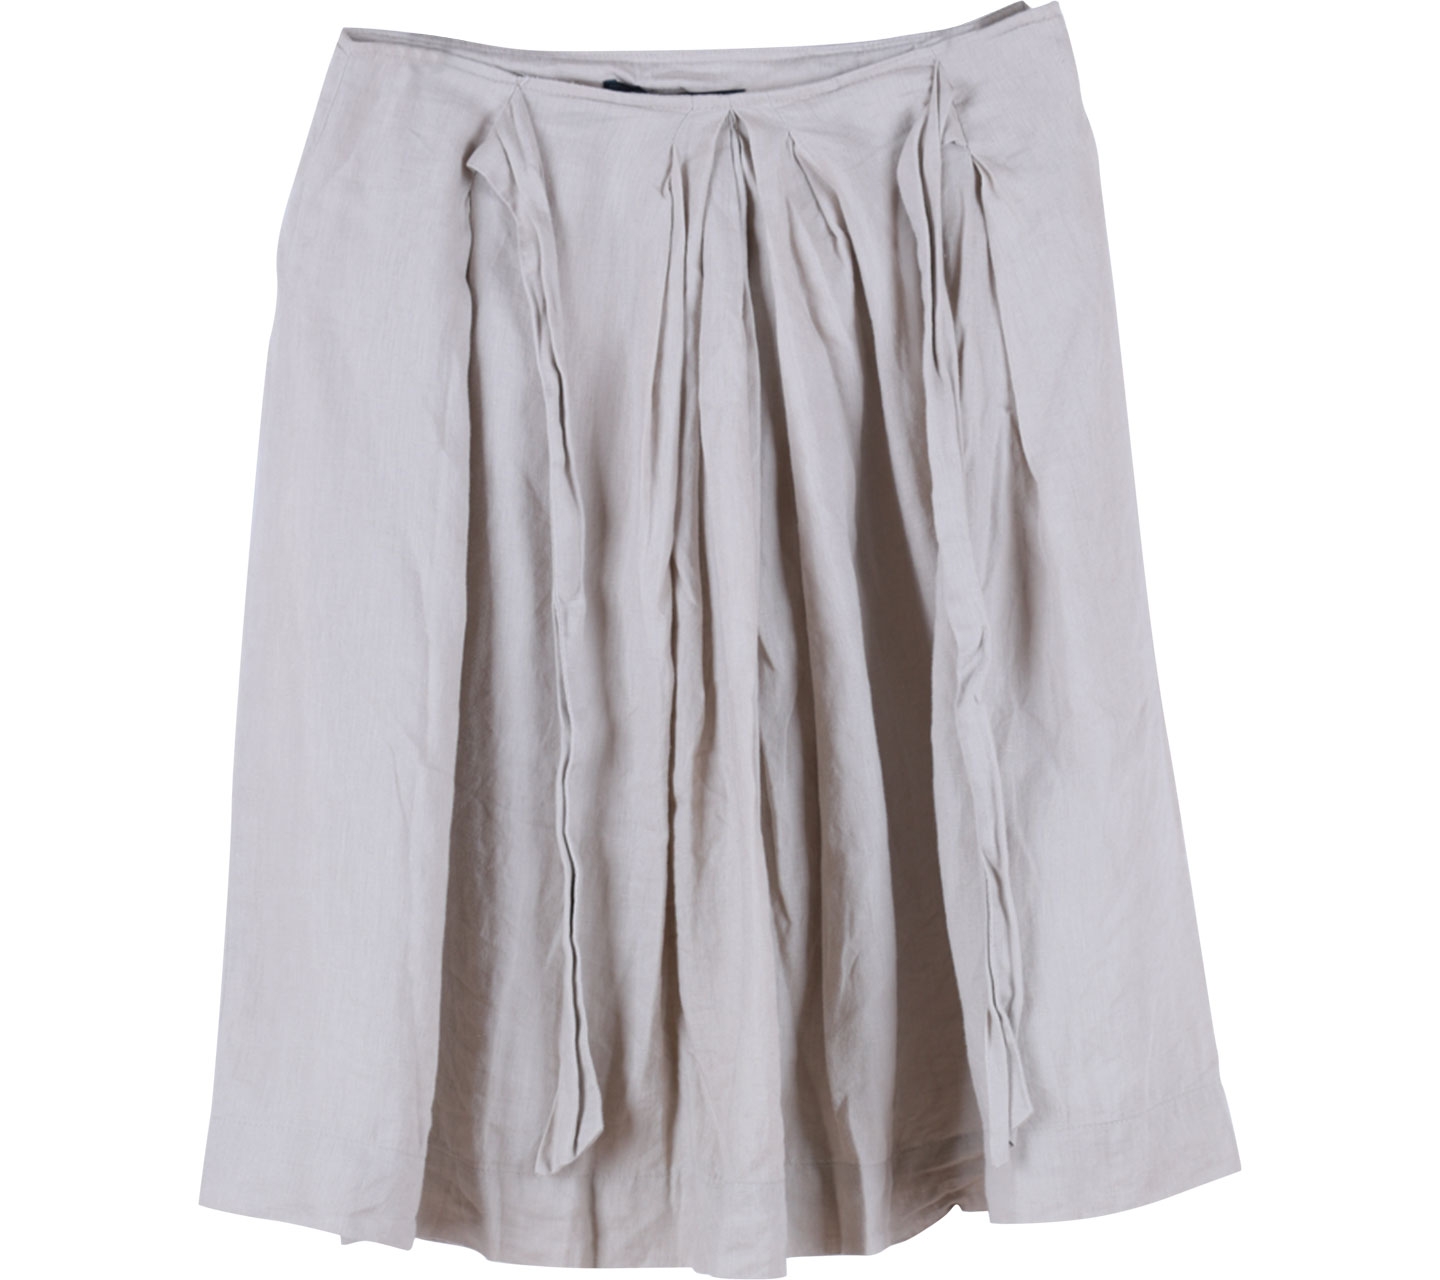 Zara Cream Skirt